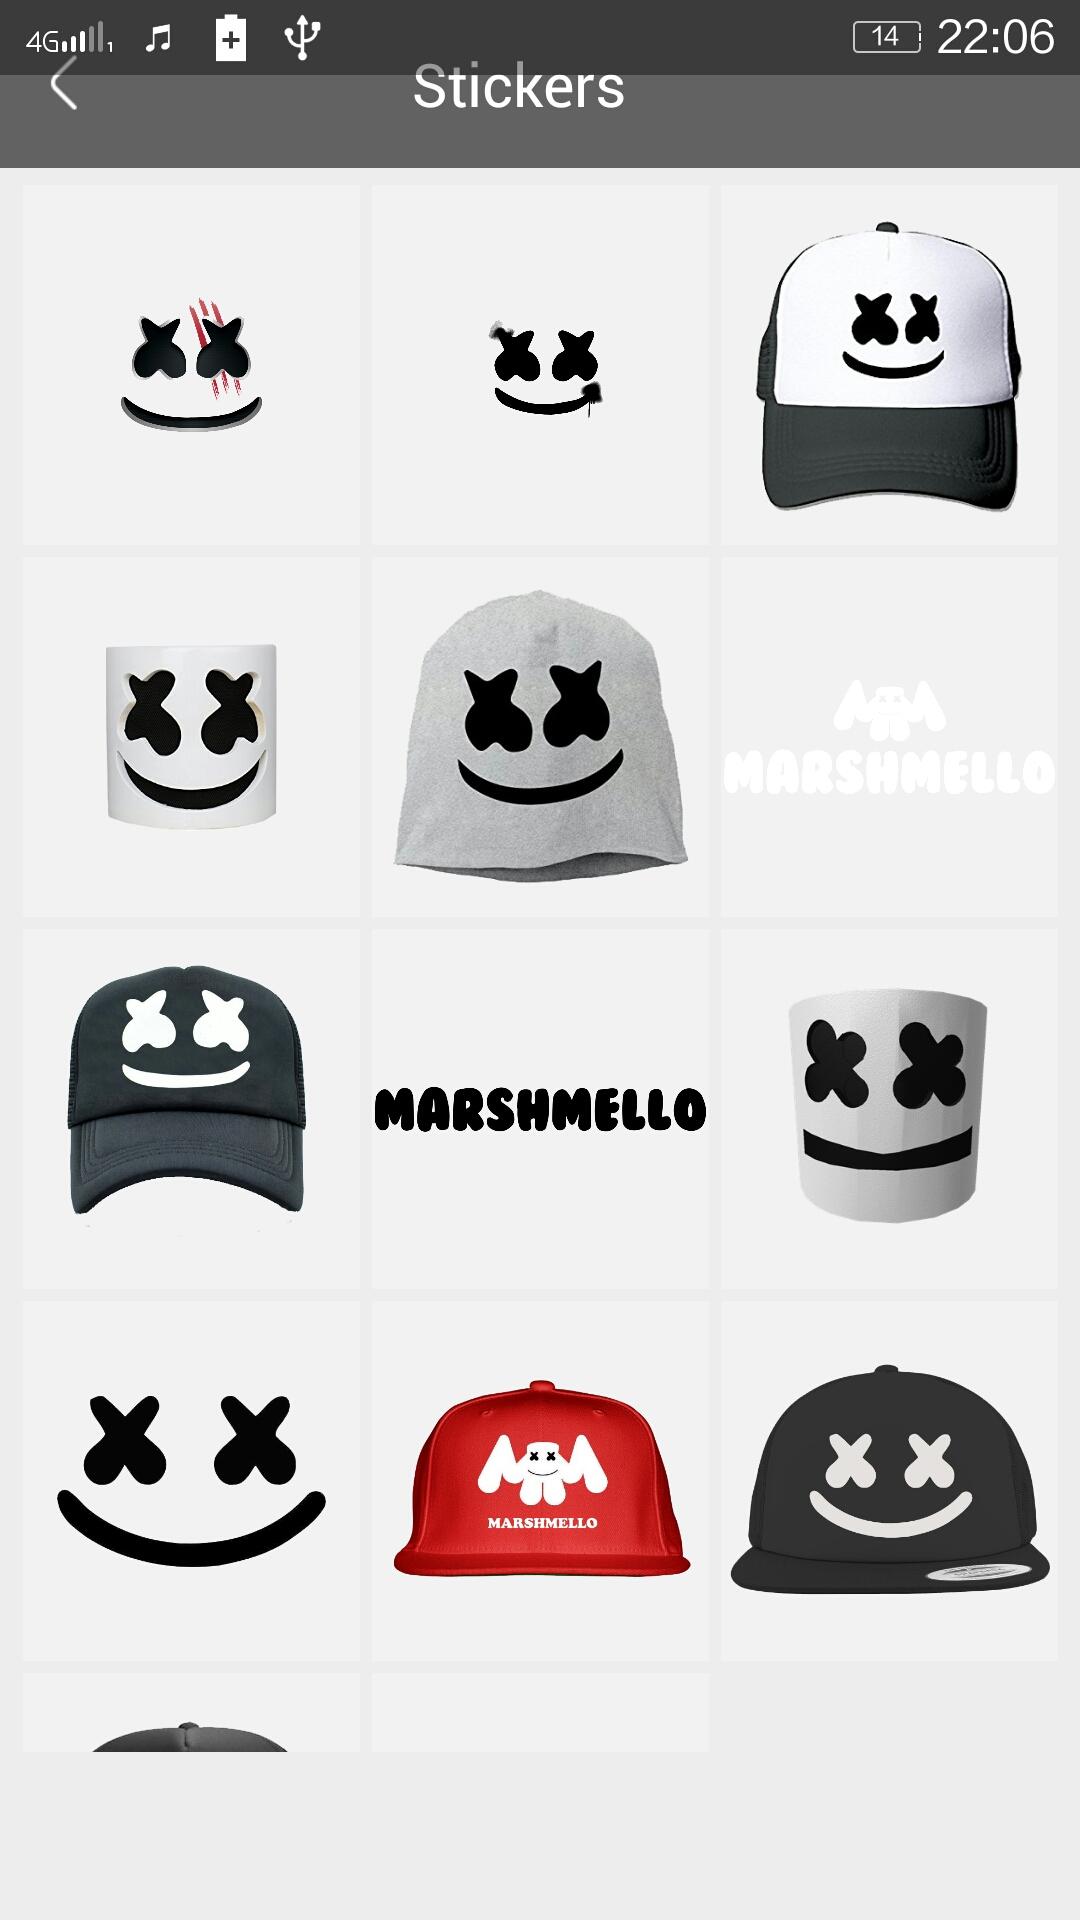 Marshmello Face Photo Editor For Android Apk Download - marshmello roblox face